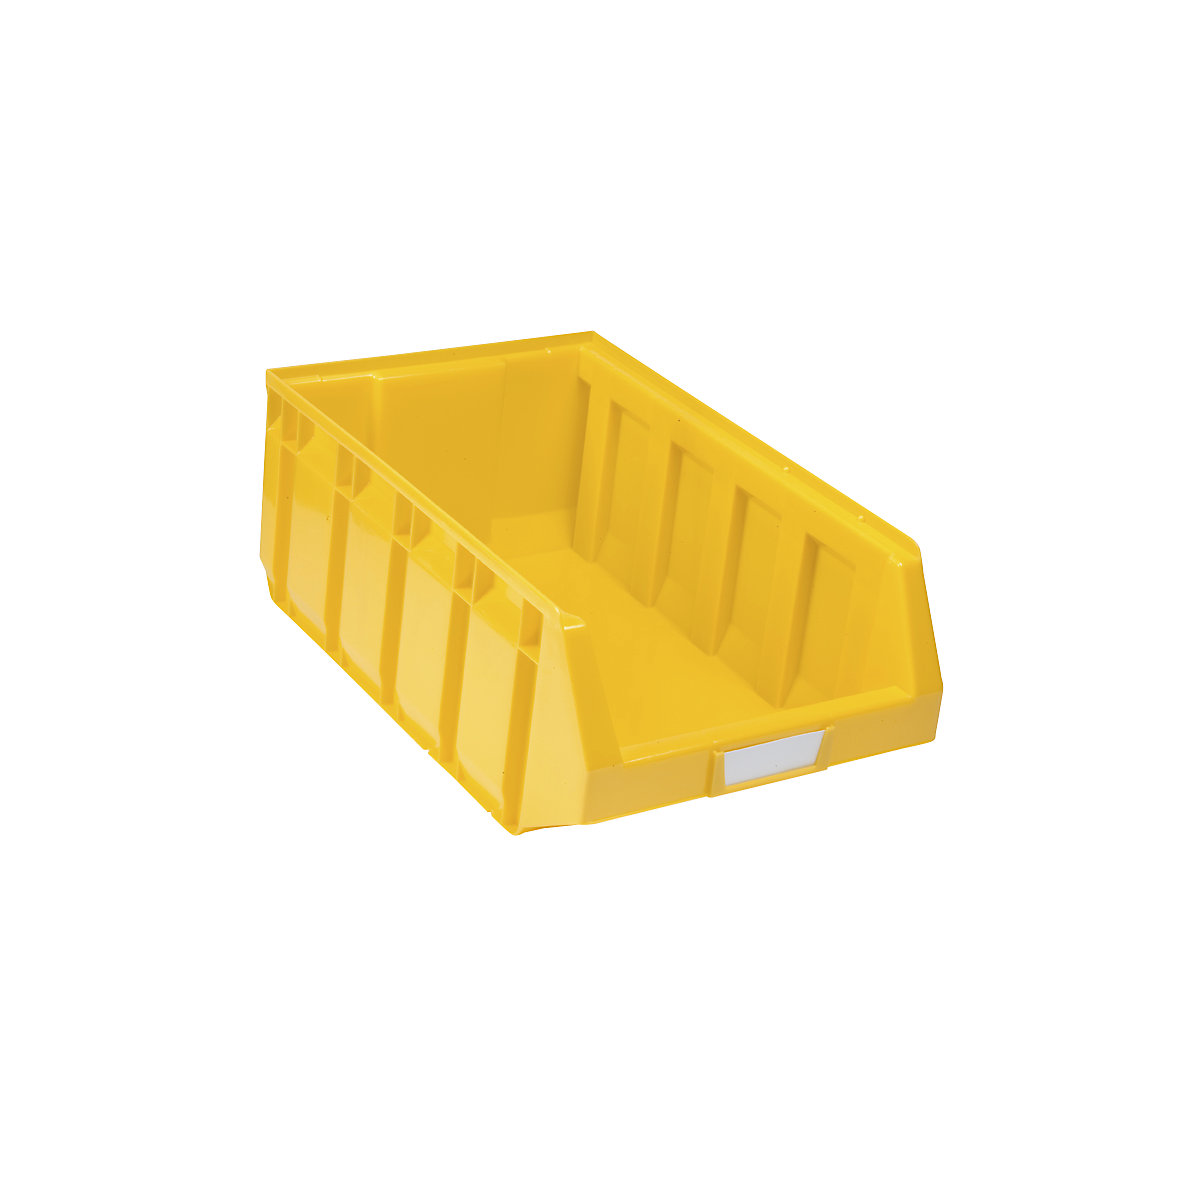 Otvorena skladišna kutija od polietilena, DxŠxV 485 x 298 x 189 mm, u žutoj boji, pak. 12 kom.-8